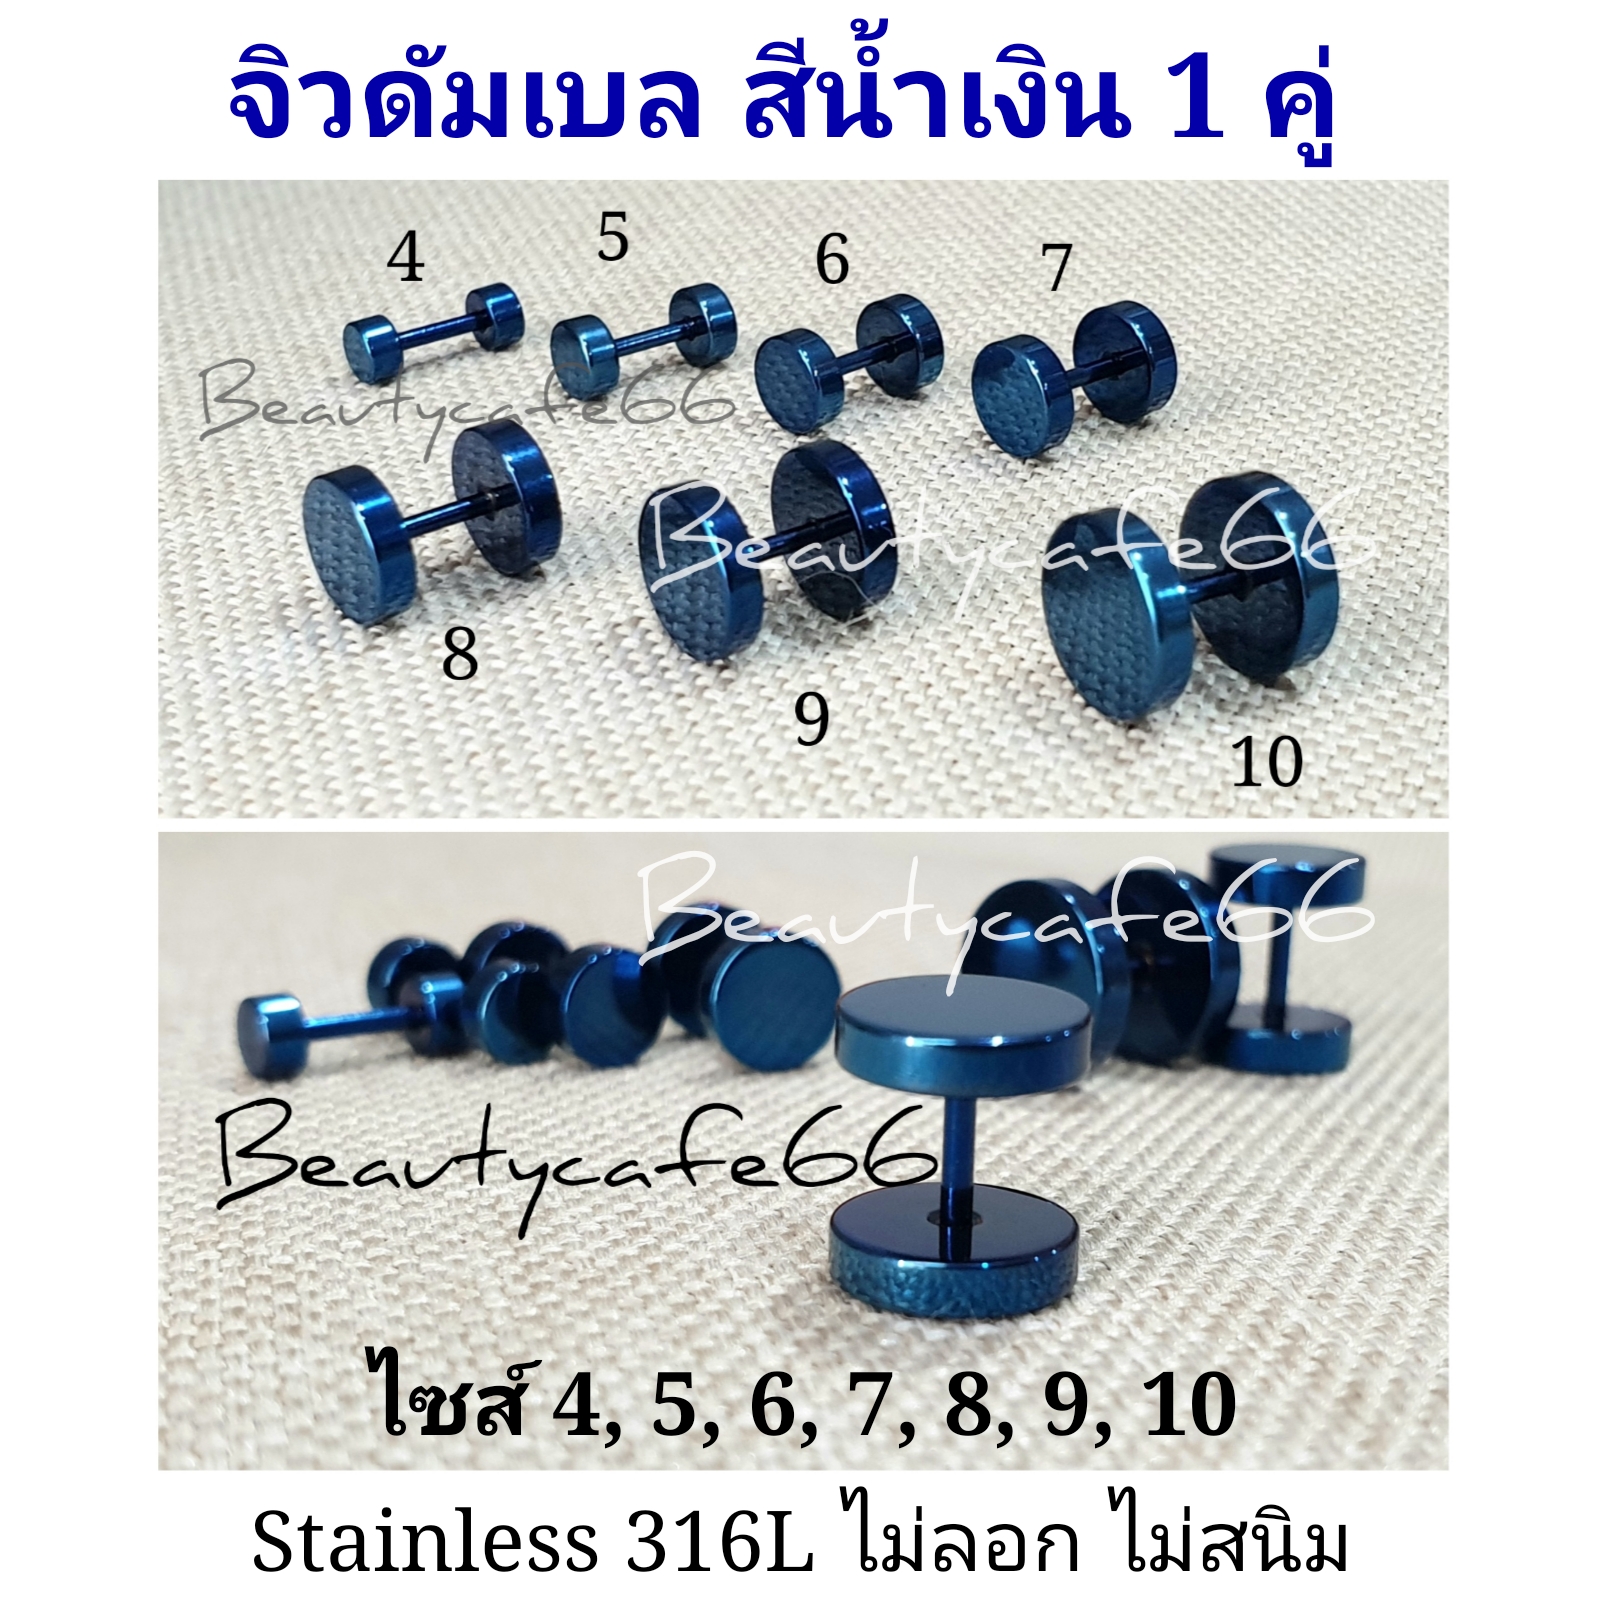 (1 คู่) สีน้ำเงิน Navy Blue จิวหู ดัมเบล สแตนเลส Stainless Steel 316L ก้าน 1.2 mm. ไม่ลอก ไม่ดำ ไม่ระคายเคือง จิวดัมเบล